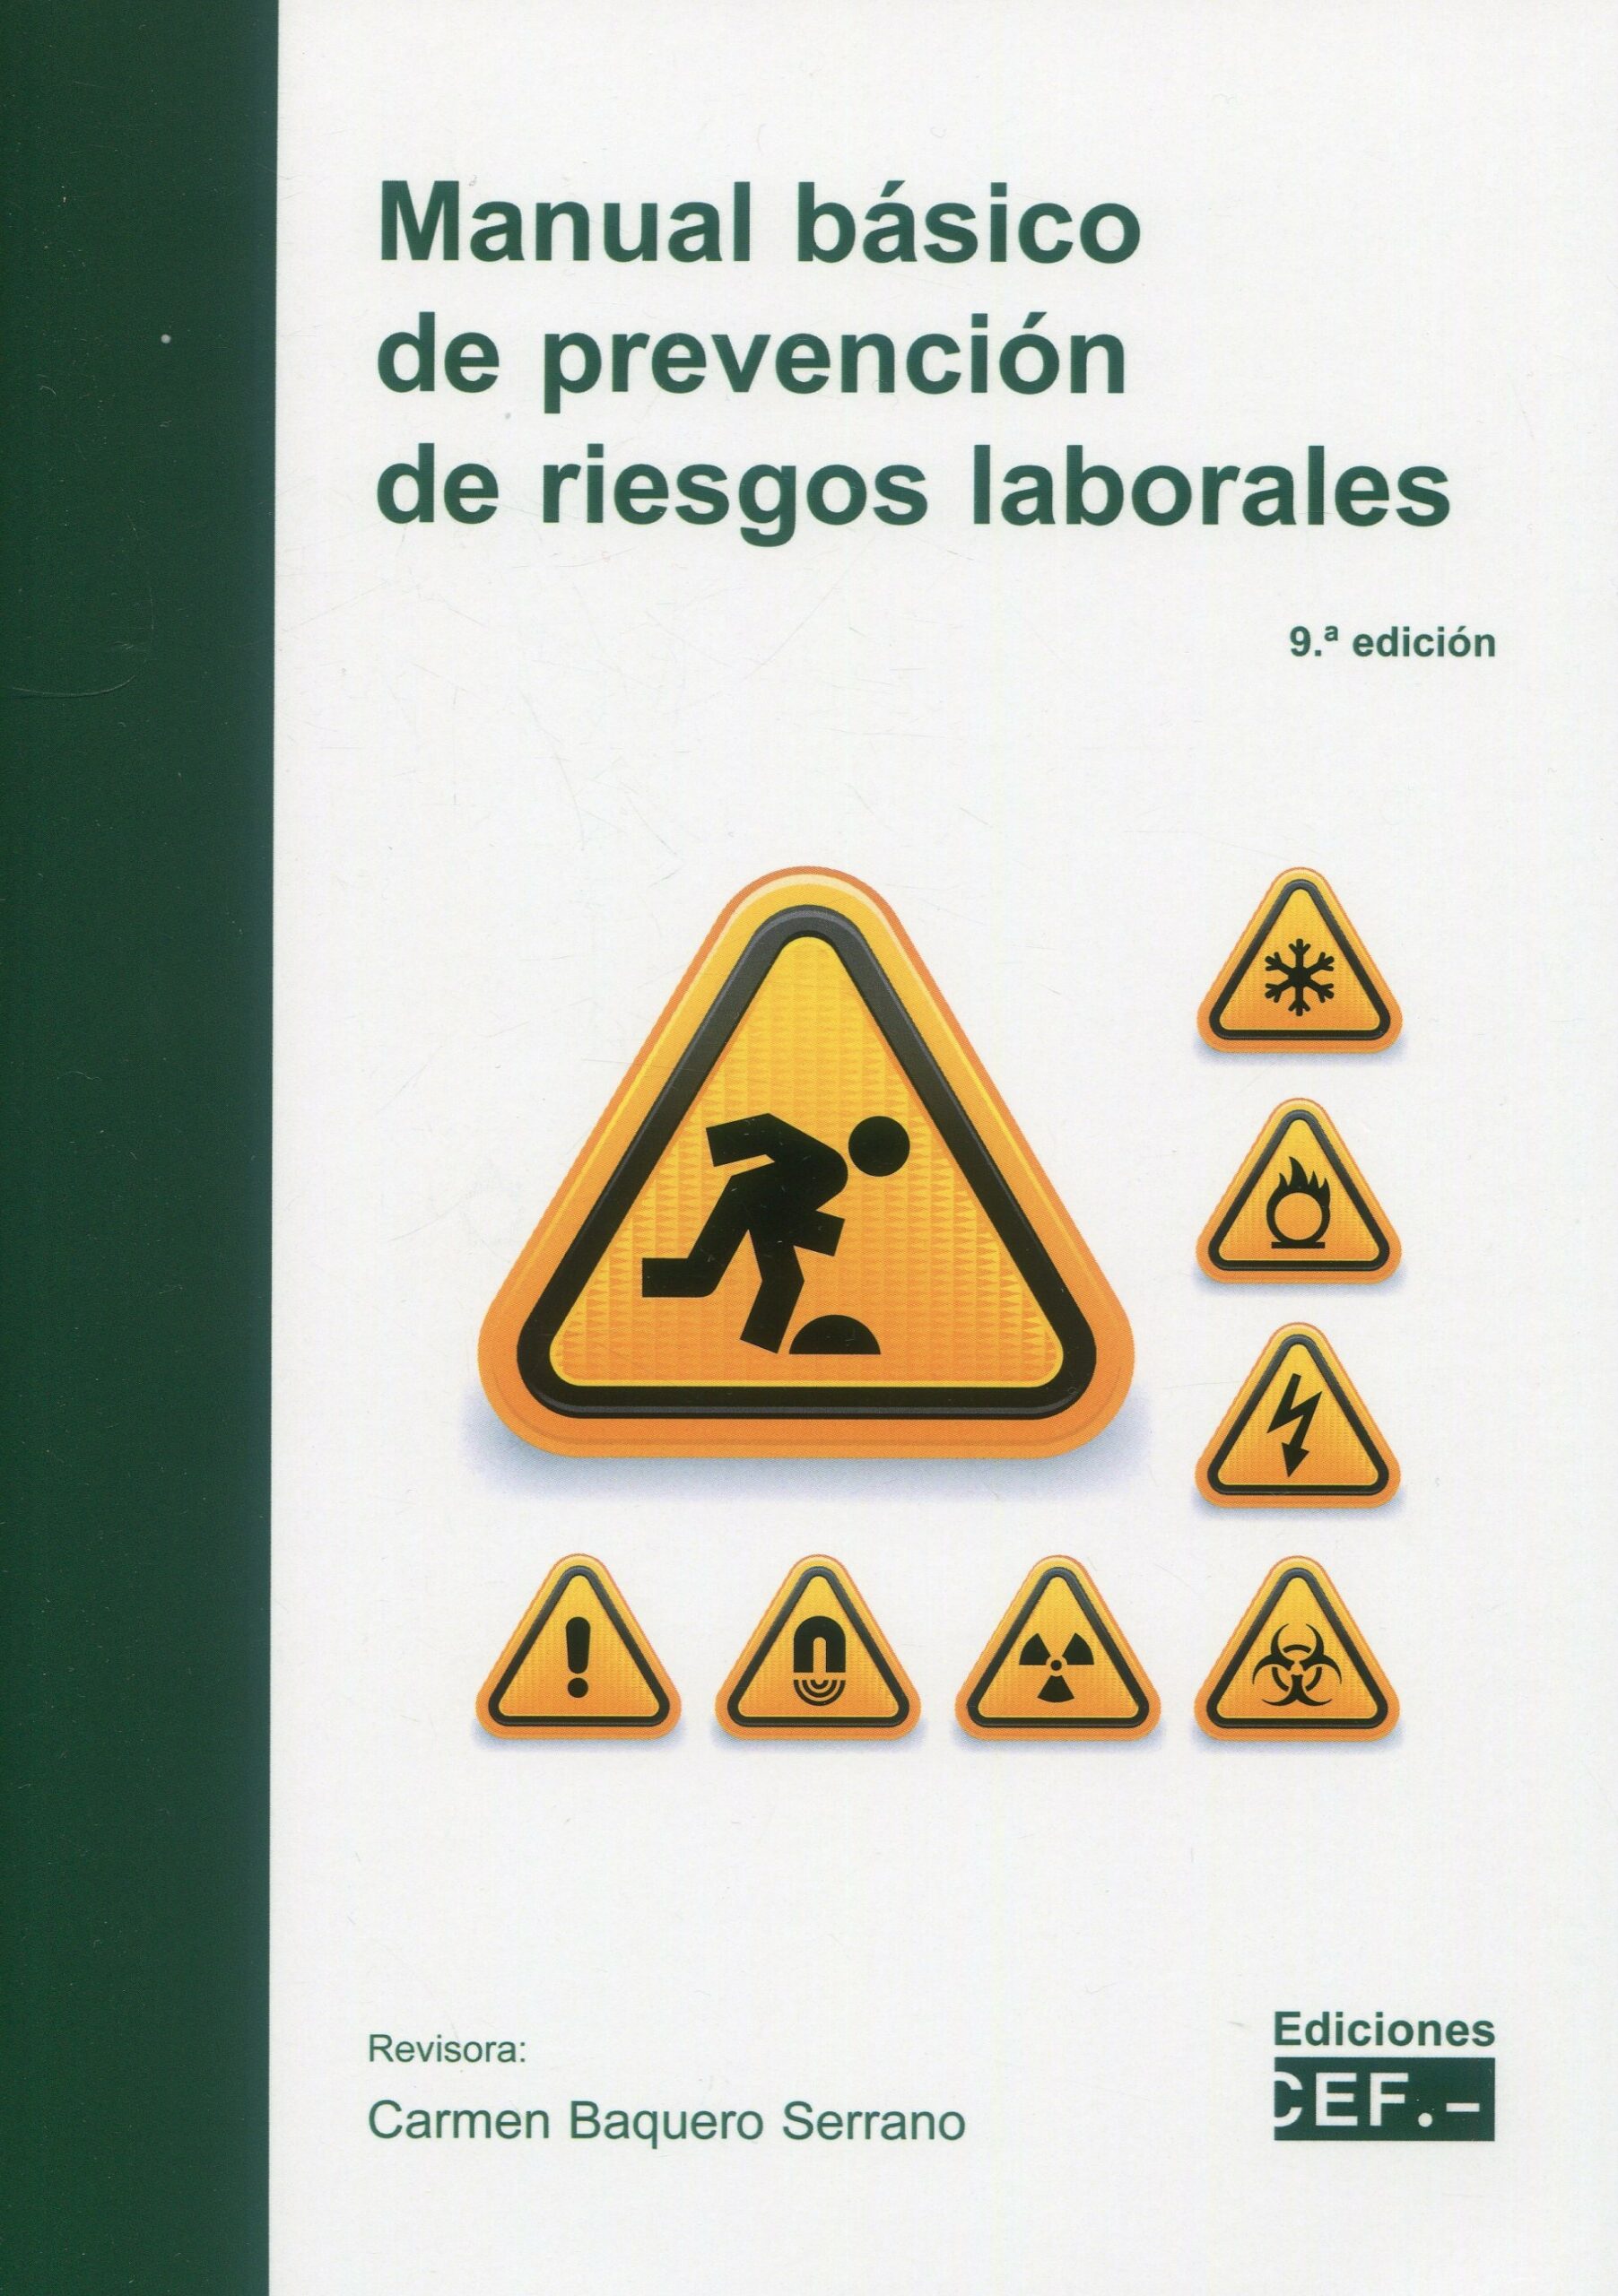 Manual básico de prevención de riesgos laborales 